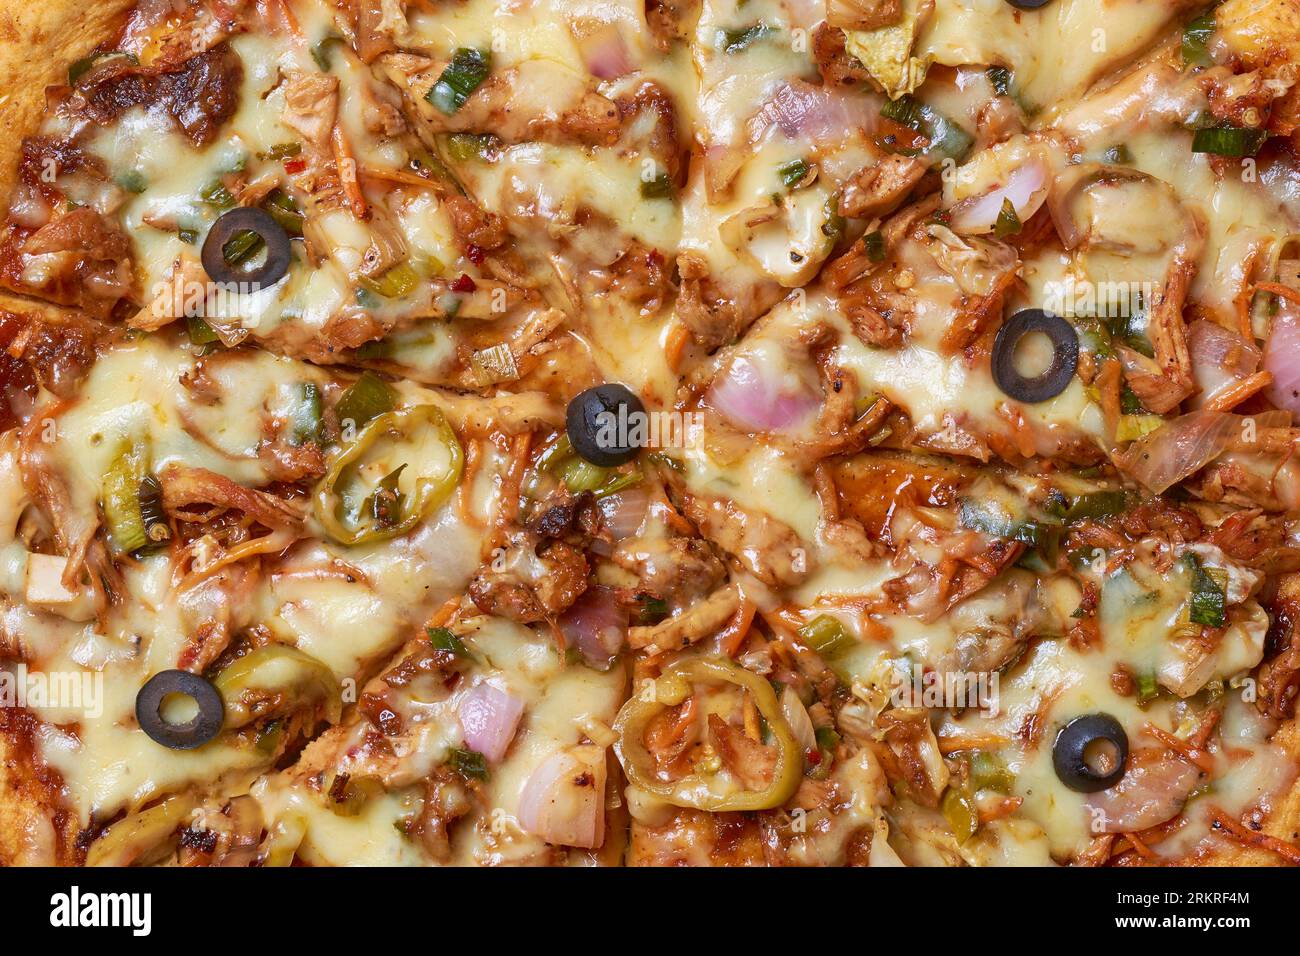 primo piano della pizza di pollo speziata e diabolica, della pizza appena preparata mescolata con verdure alla griglia, olive e doppi strati di mozzarella, strai Foto Stock